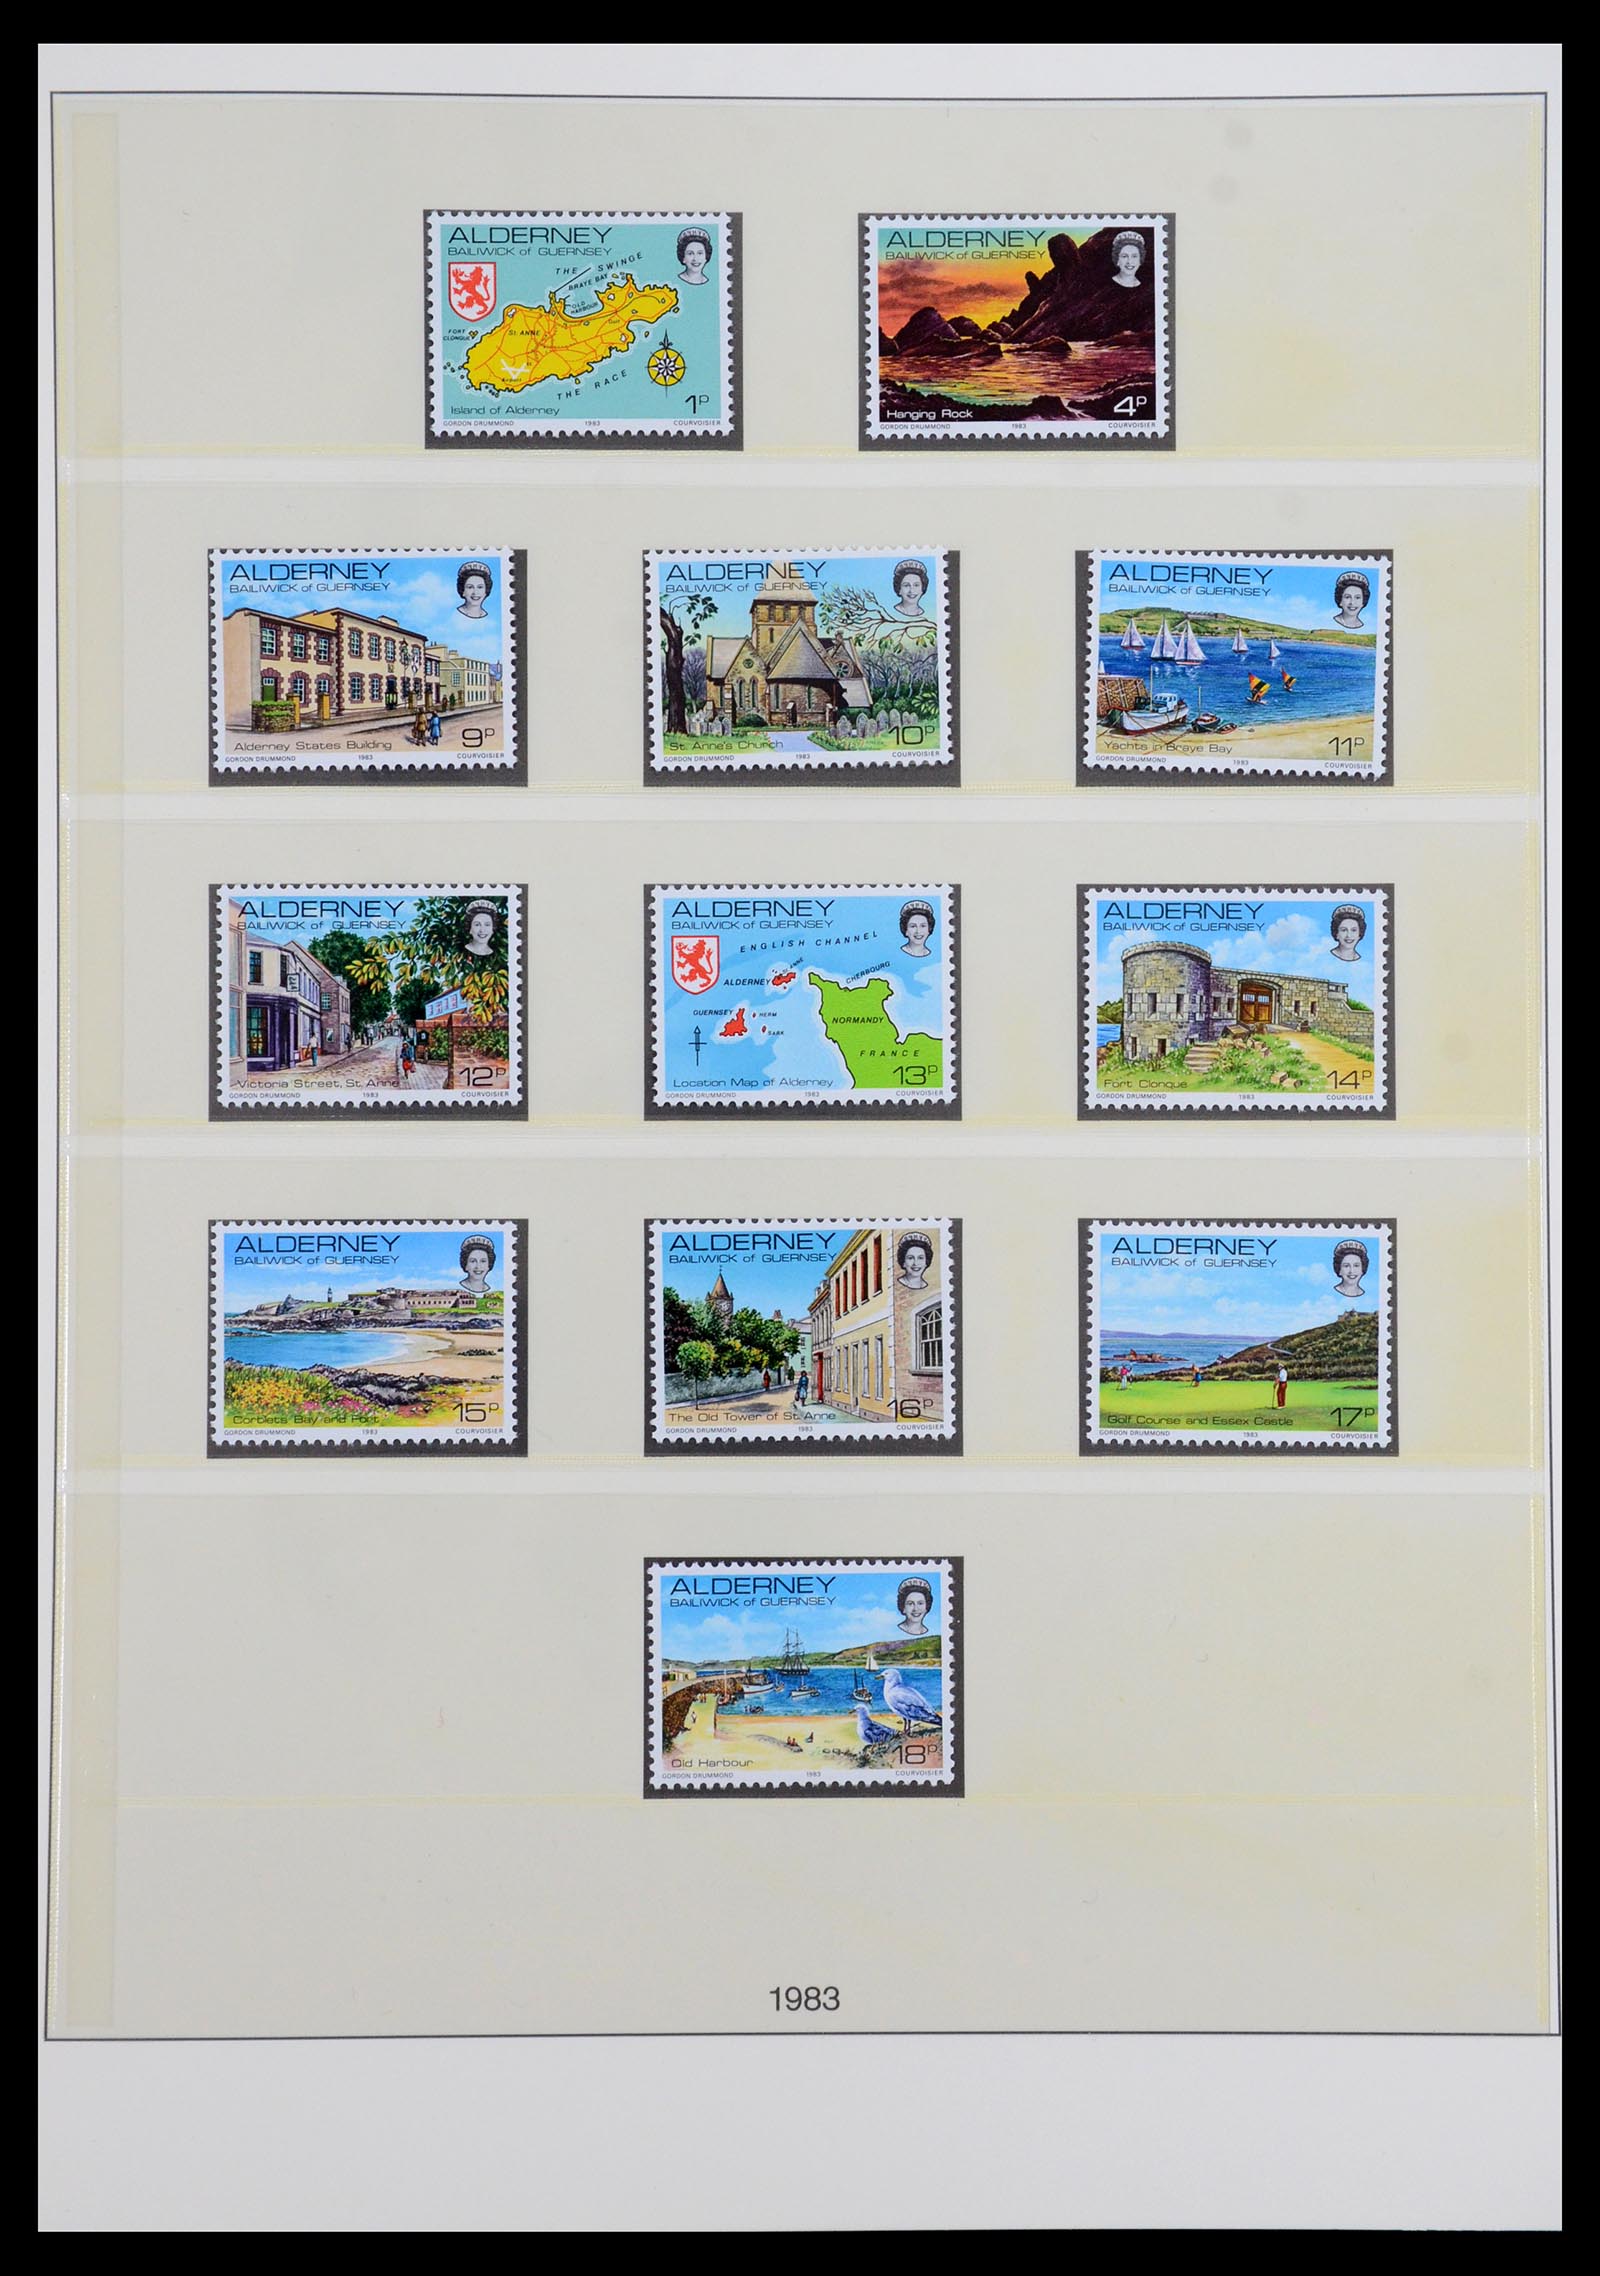 36001 001 - Stamp collection 36001 Alderney 1983-2008.